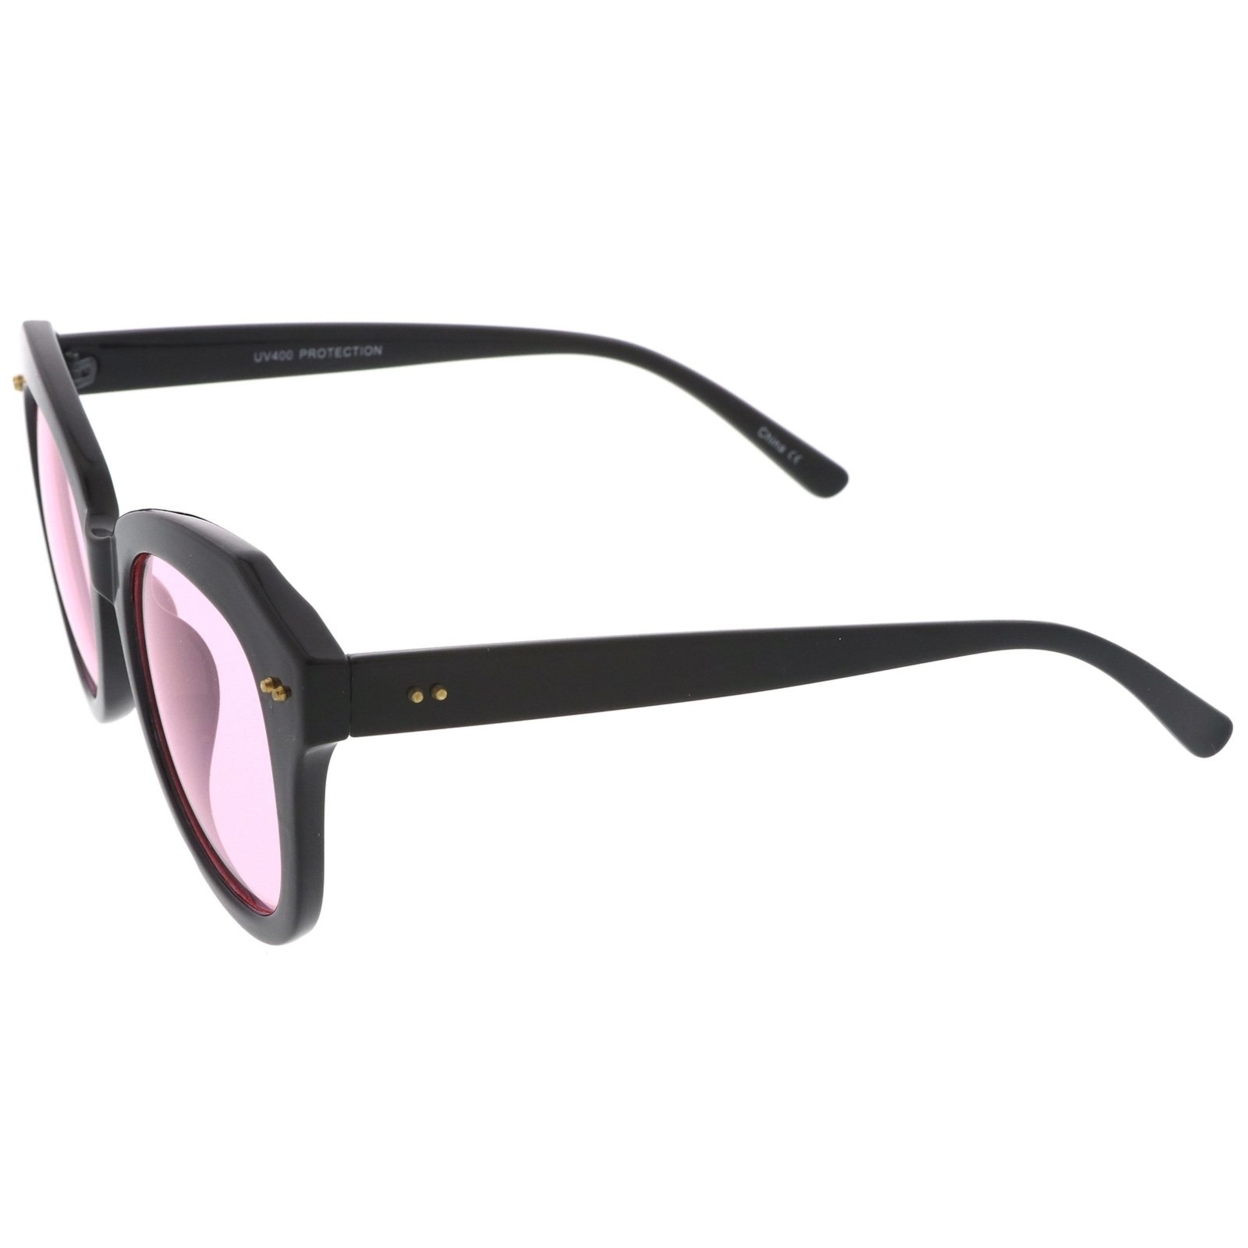 Women's Oversize Horn Rimmed Colored Round Lens Cat Eye Sunglasses 52mm - Black / Purple